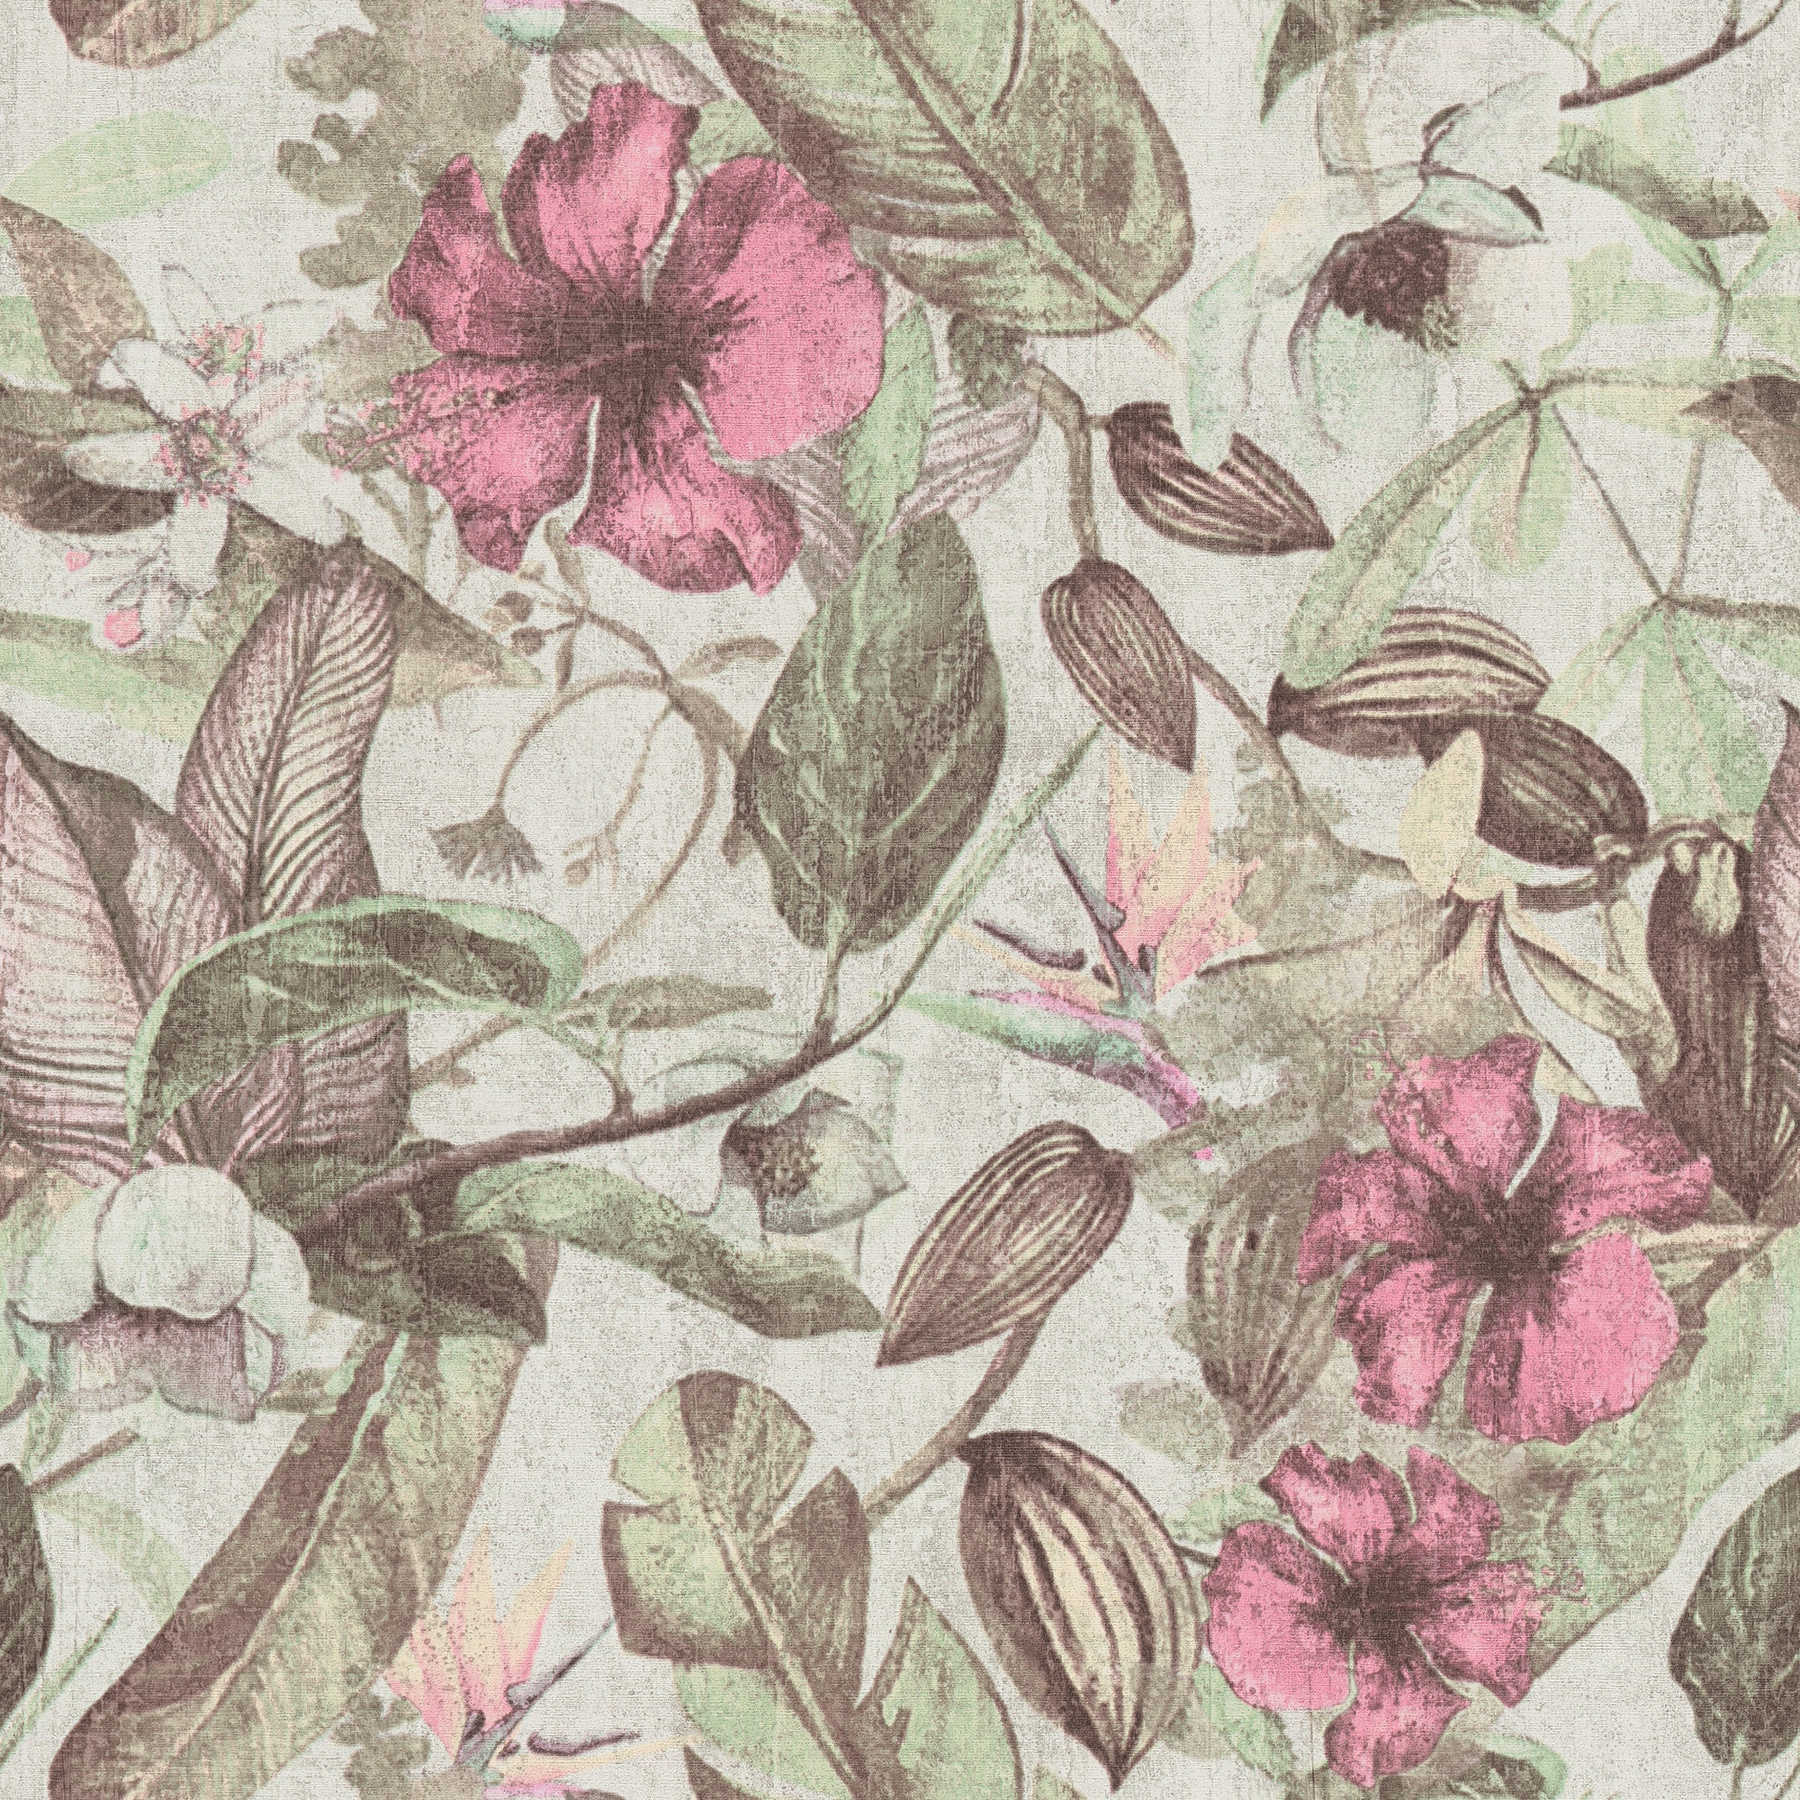 Papier peint motif floral, style tropical & aspect textile - rose, vert, marron
